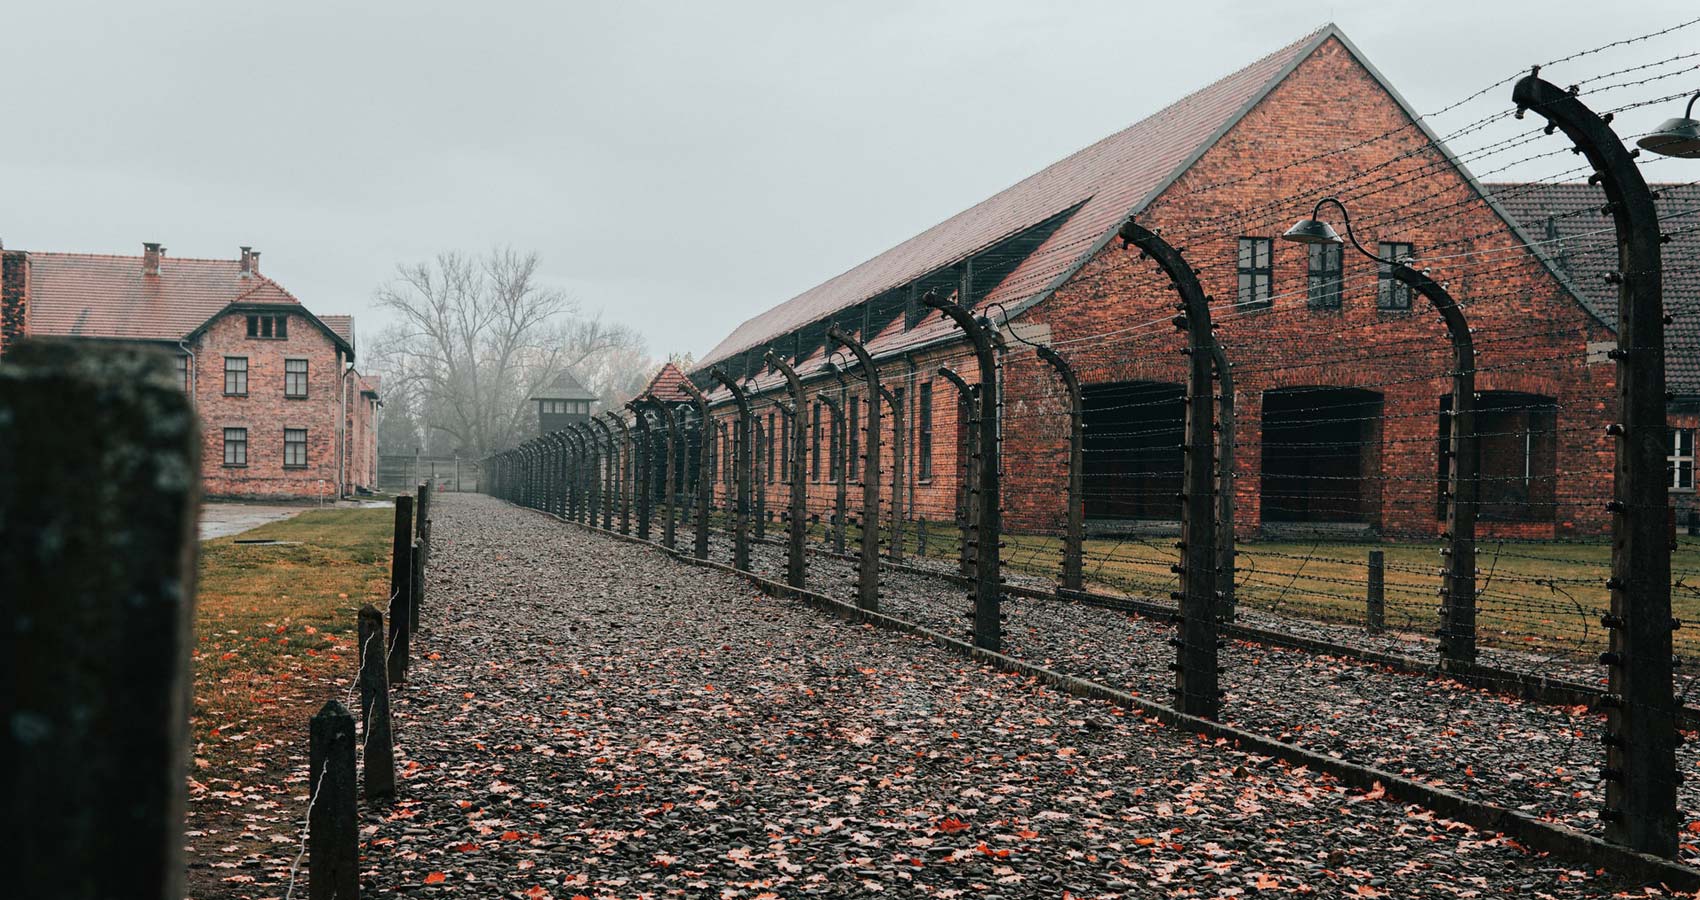 Nigdy Wiecej! - Śladami Auschwitz-Birkenau, a poem by Yvette Popławska at Spillwords.com